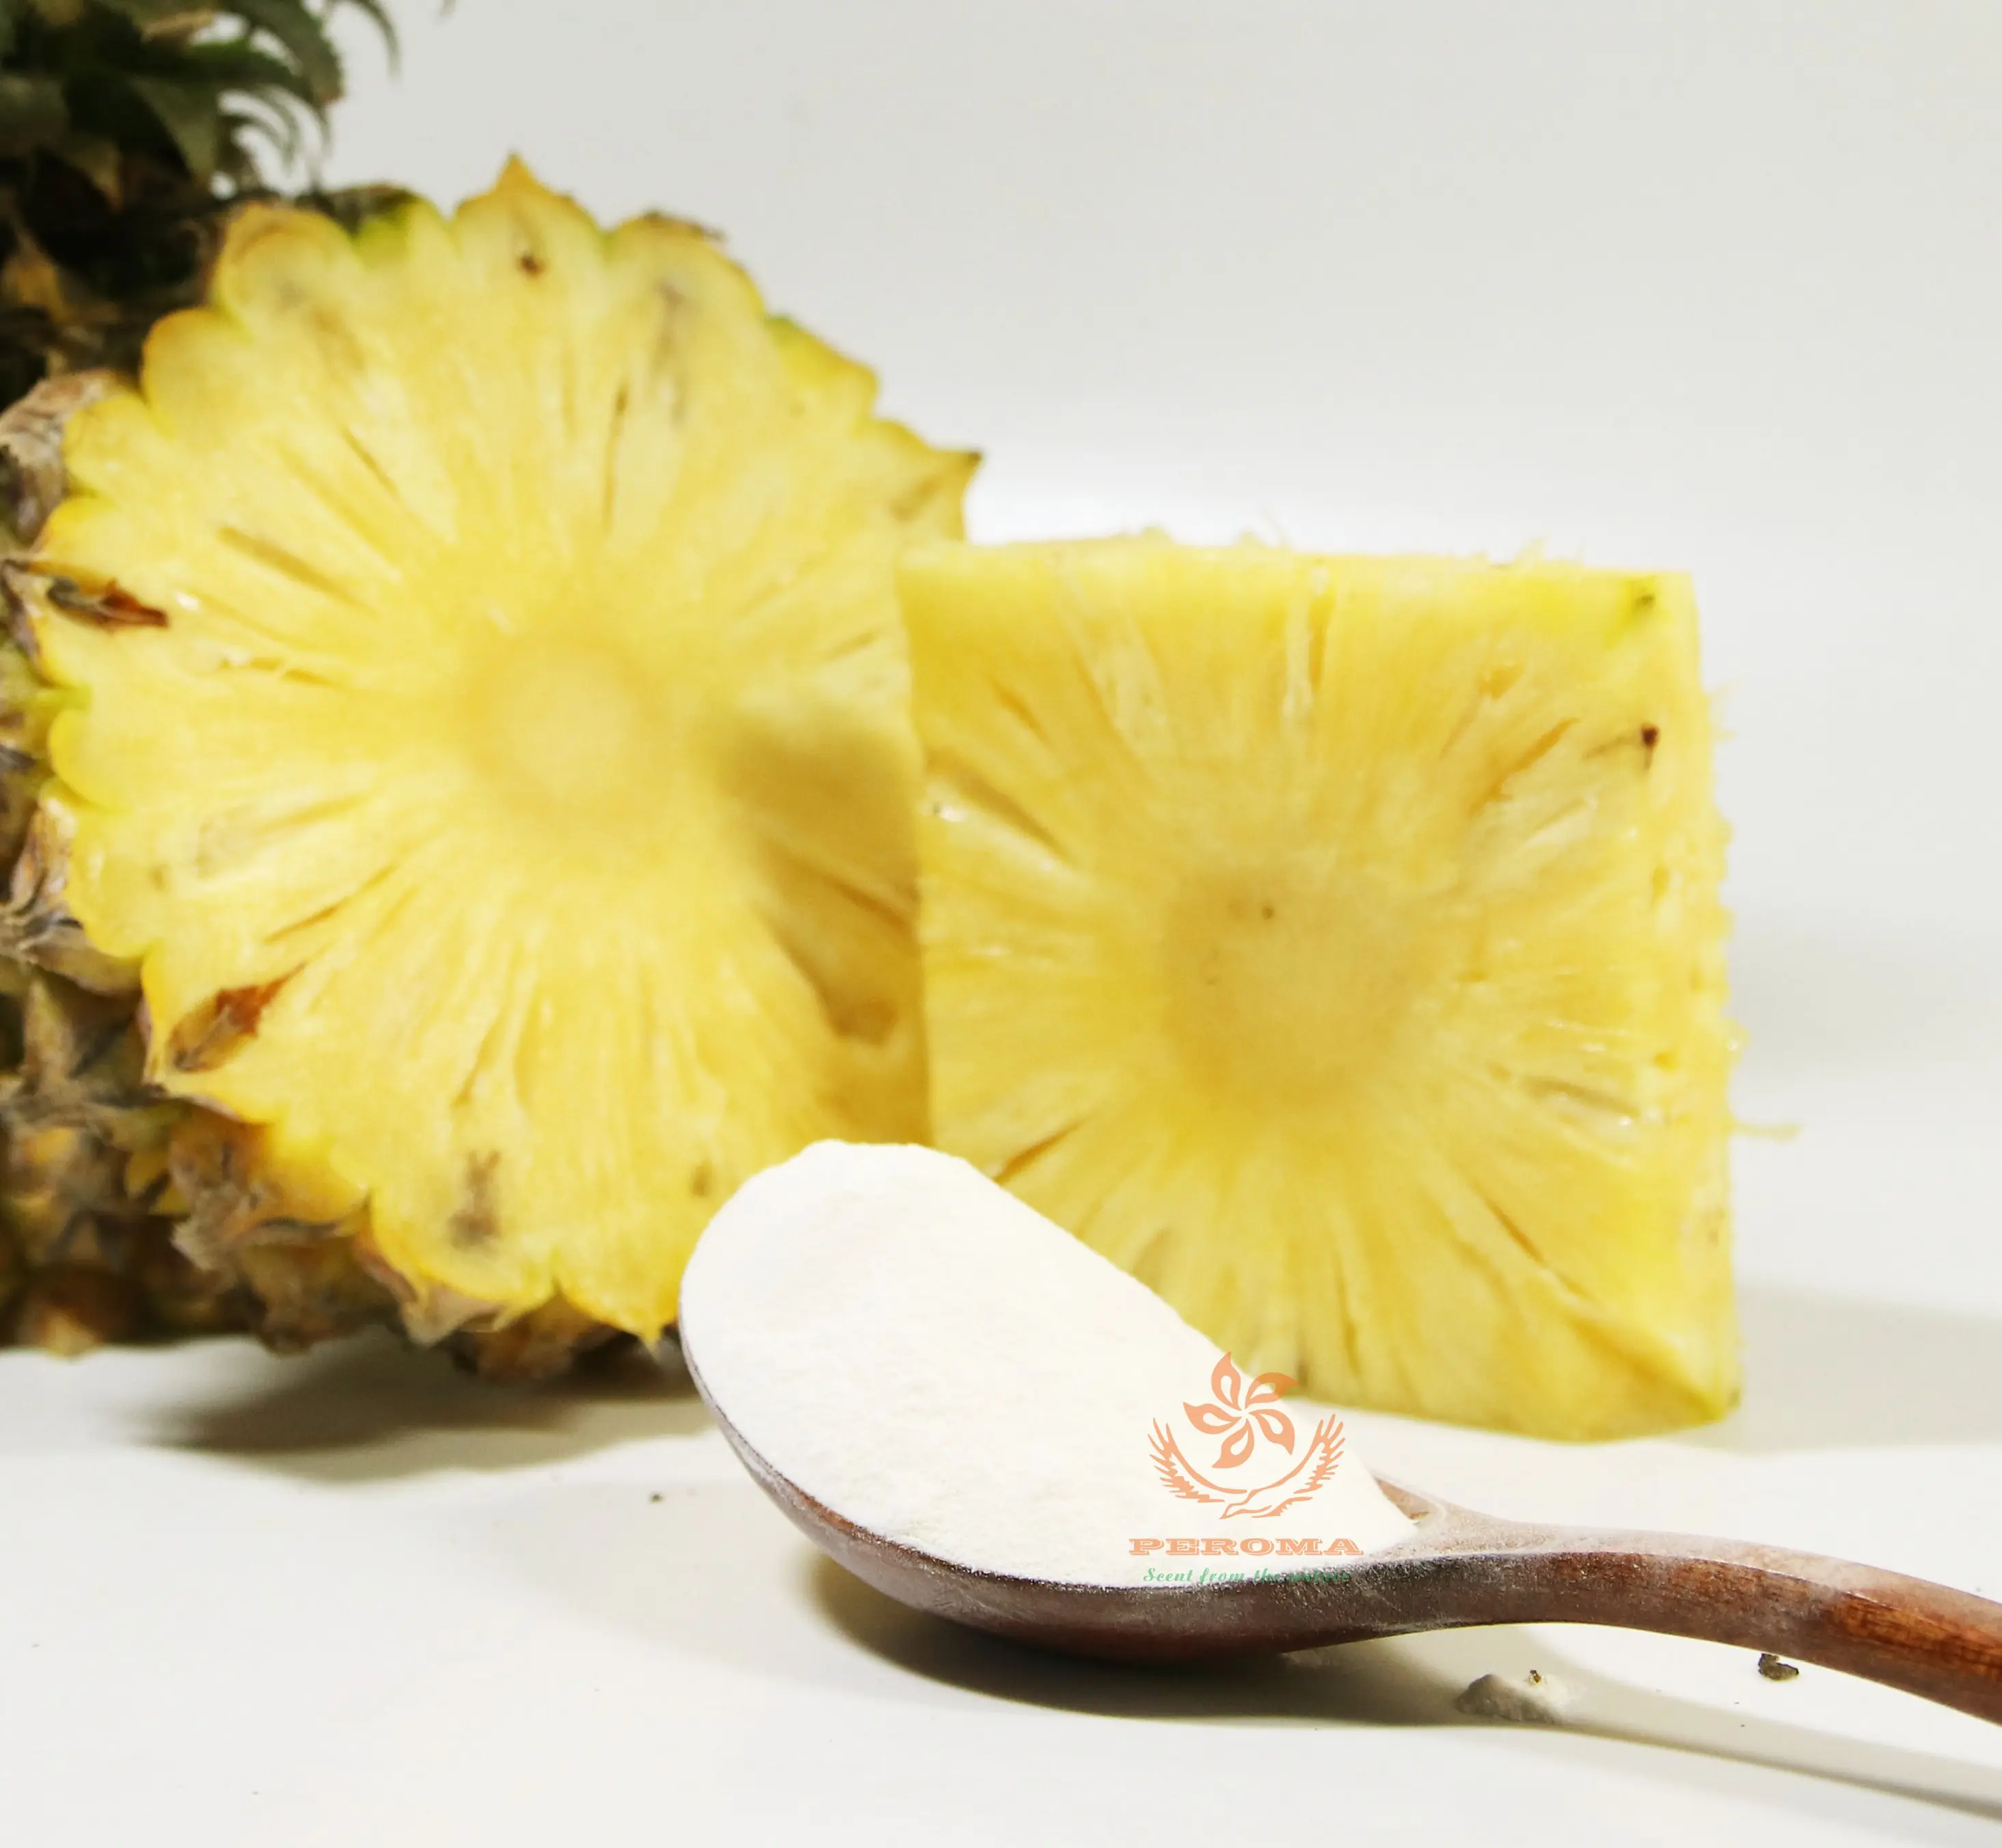 Fabrika doğal bitki özleri kaynağı orijinal ananas meyve toz özü ile özel fiyat için gıda ve içecek